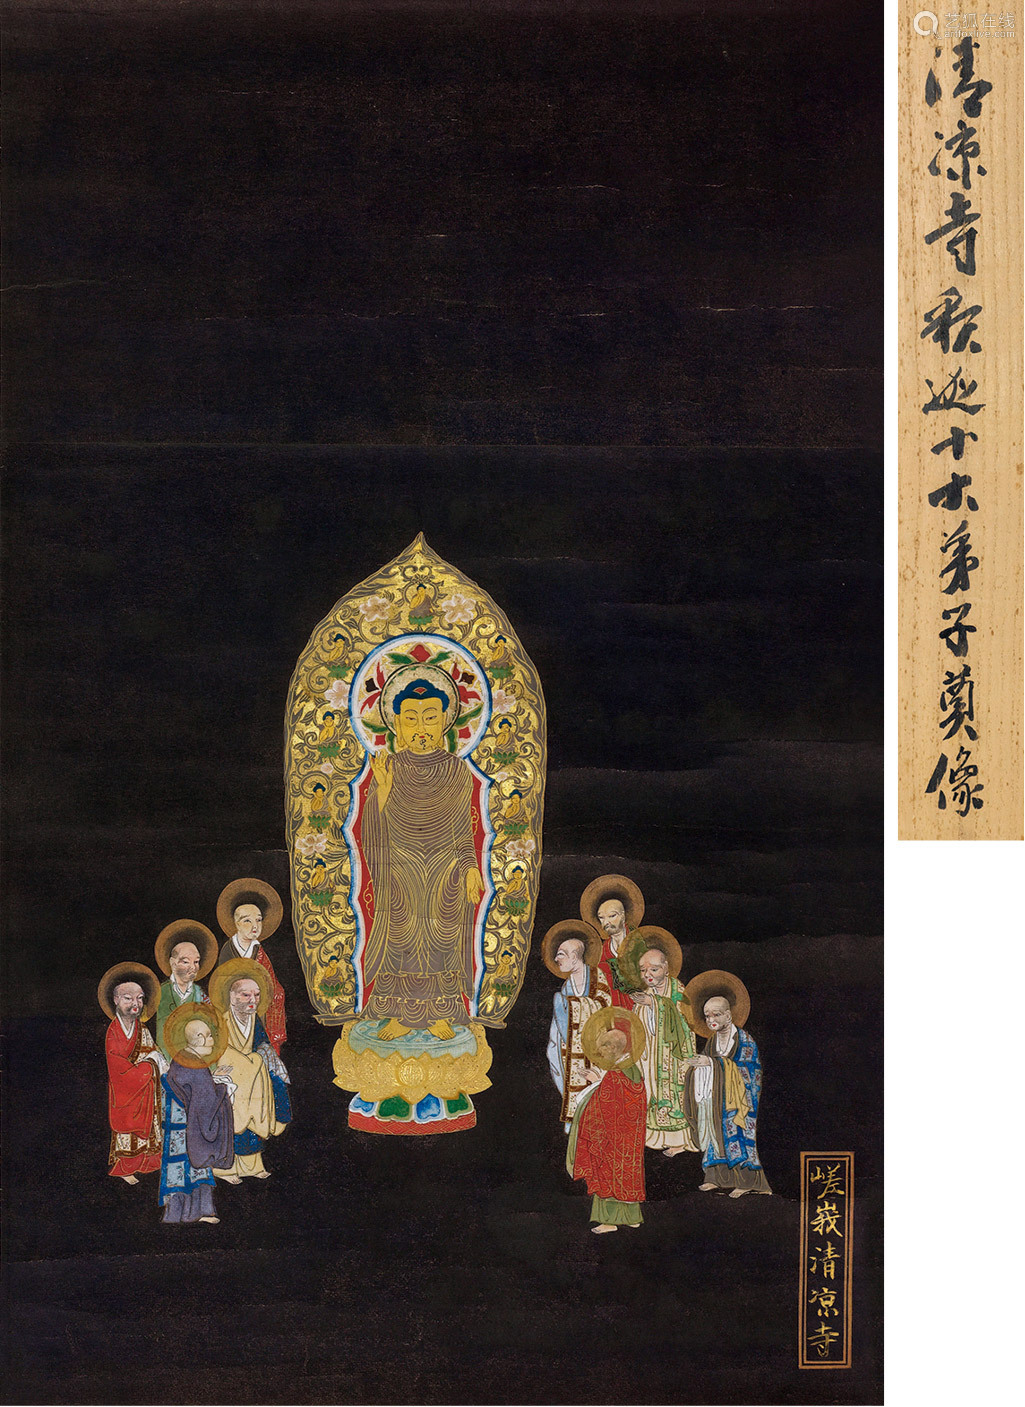 尺寸43×26cm拍品描述作品赏析:佛陀的"十大弟子"相传是释迦牟尼的